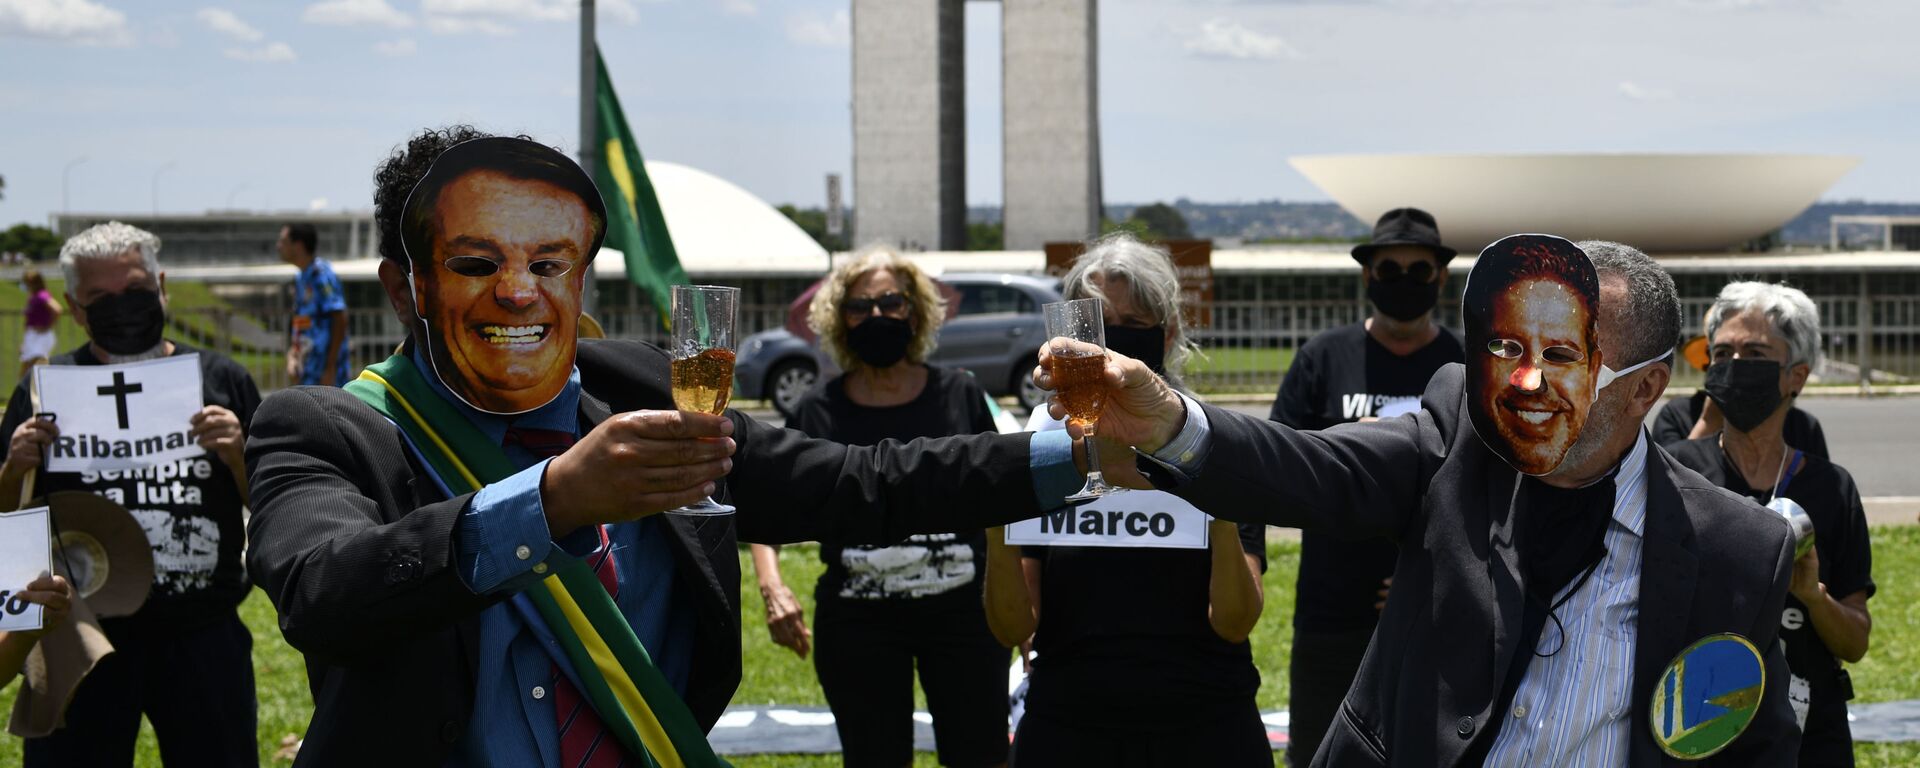 Manifestantes realizam protesto contra o presidente Jair Bolsonaro e o presidente da Câmara dos Deputados, Arthur Lira, em frente ao Congresso Nacional, em Brasília, Brasil, 30 de janeiro de 2021 - Sputnik Brasil, 1920, 04.11.2021